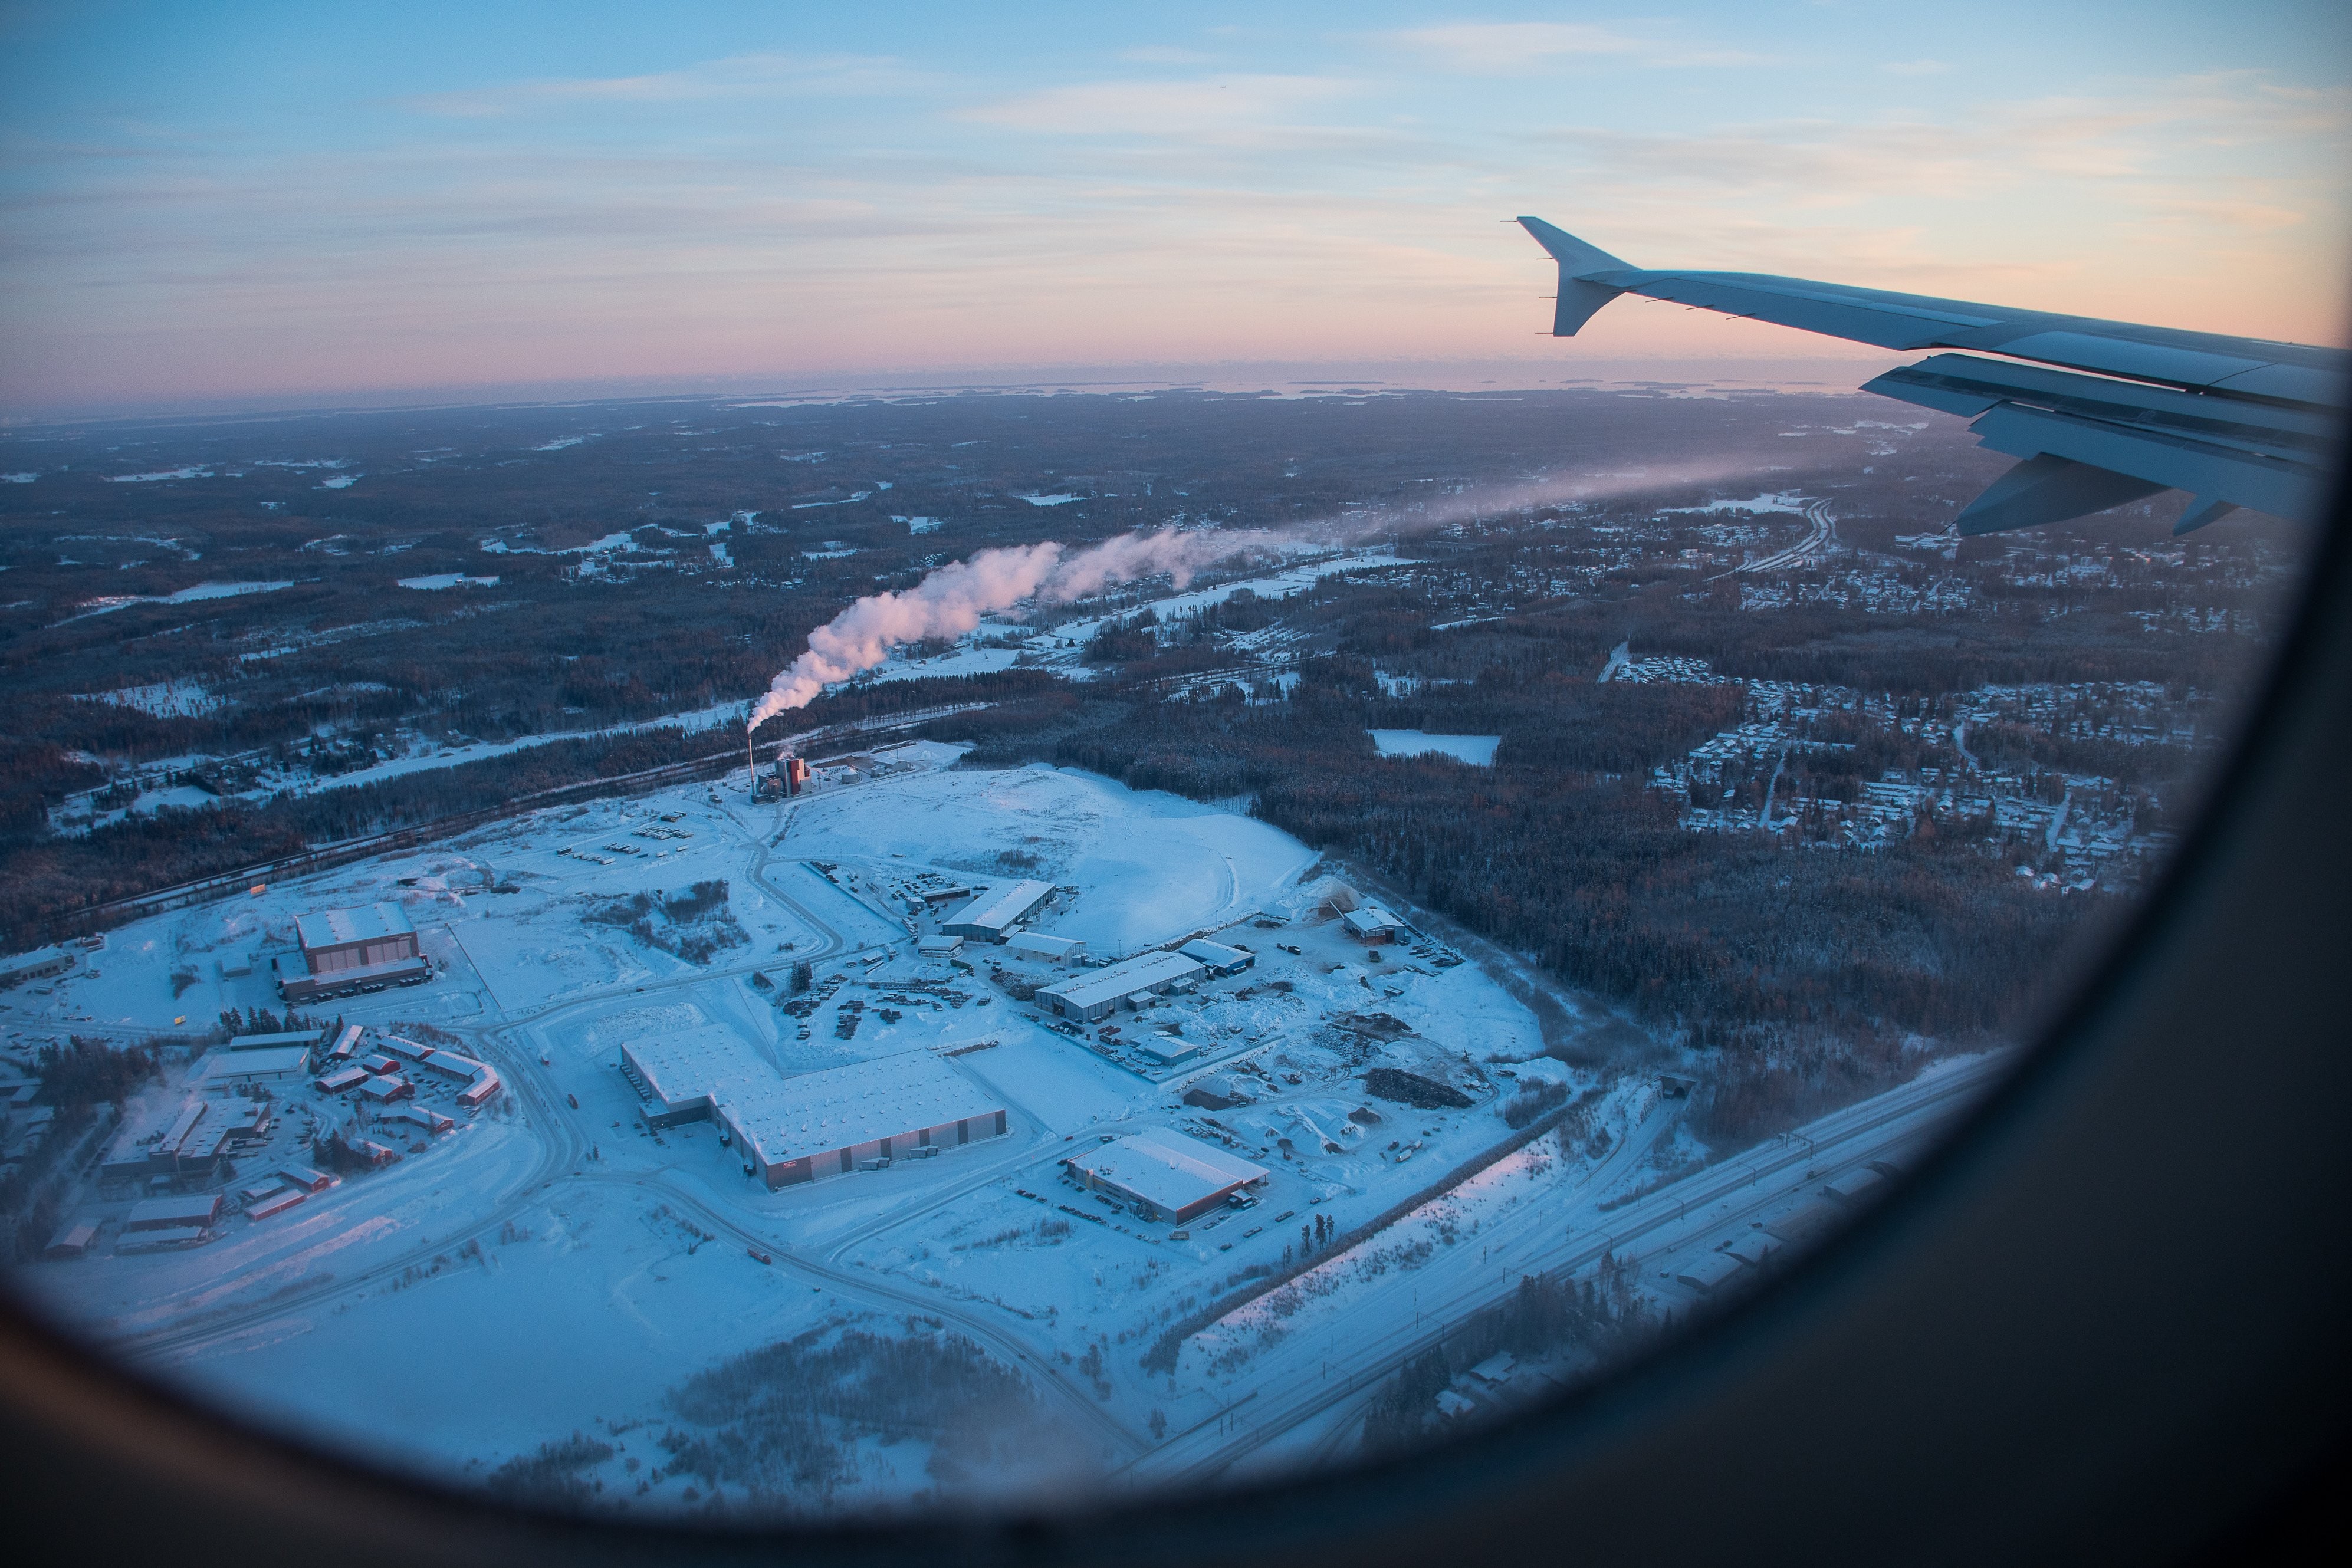 Foto de cena de inverno em janela de avião